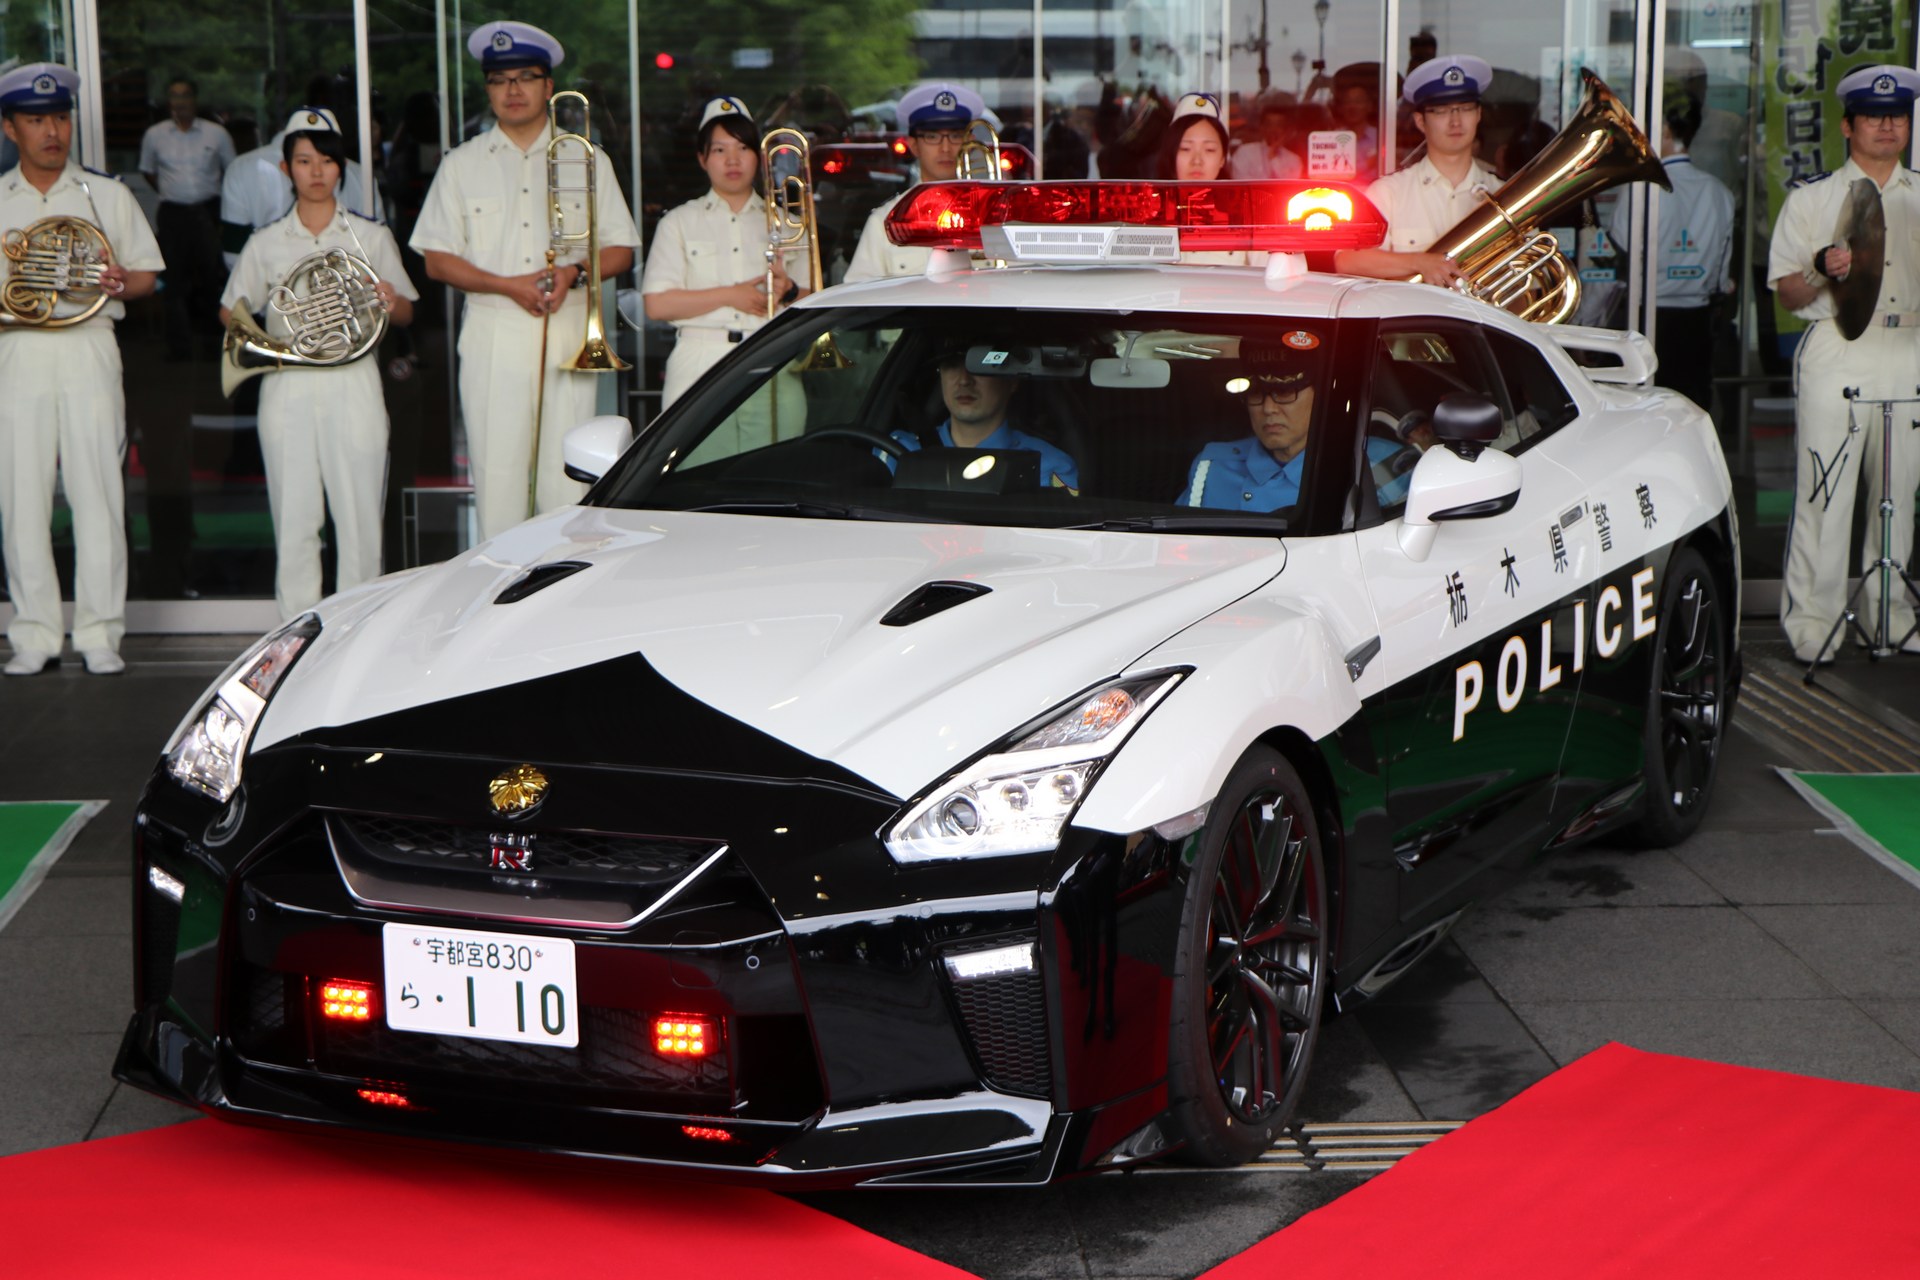 "بالصور" نيسان GT-R تدخل الخدمة رسميا بأسطول الشرطة اليابانية 12